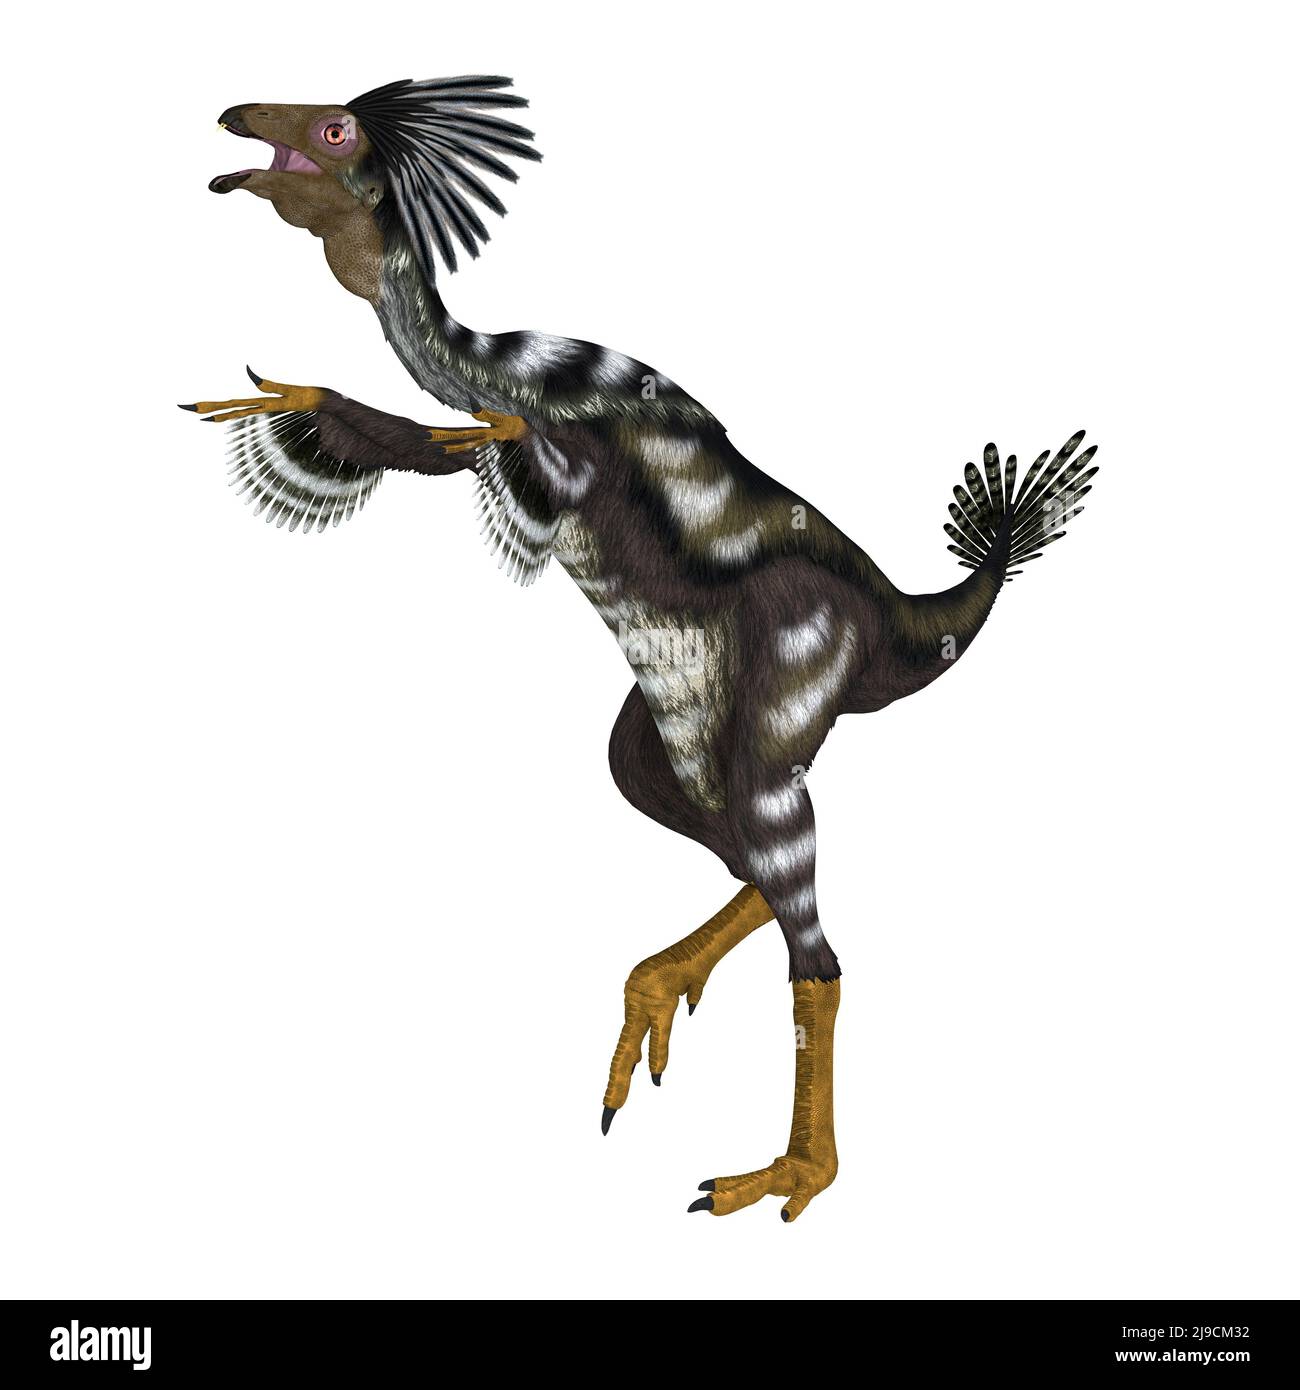 Caudipteryx fue un ave depredadora carnívora que vivió en China durante el período Cretácico. Foto de stock